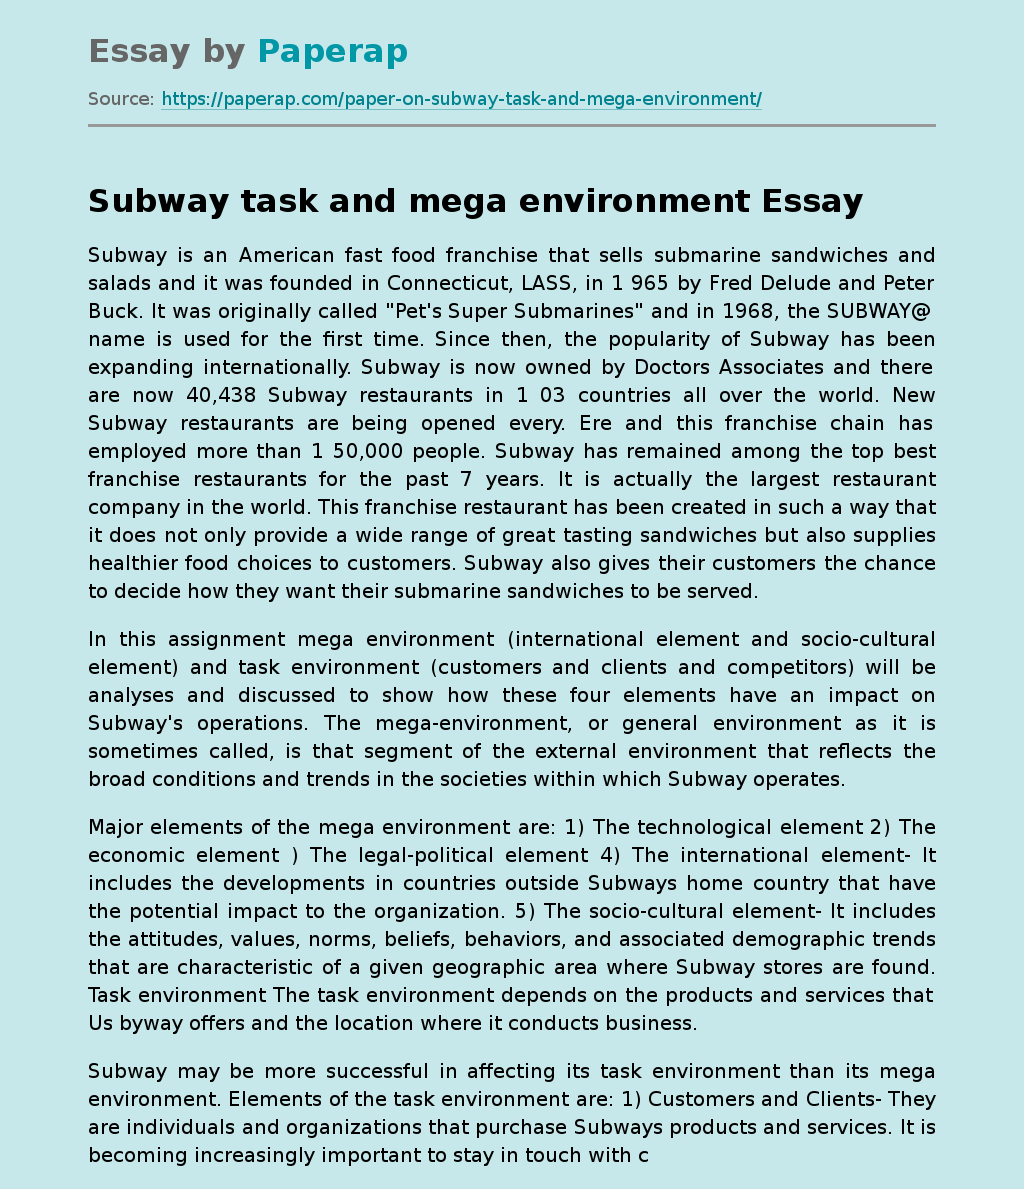 Mega Environment and Work Environment